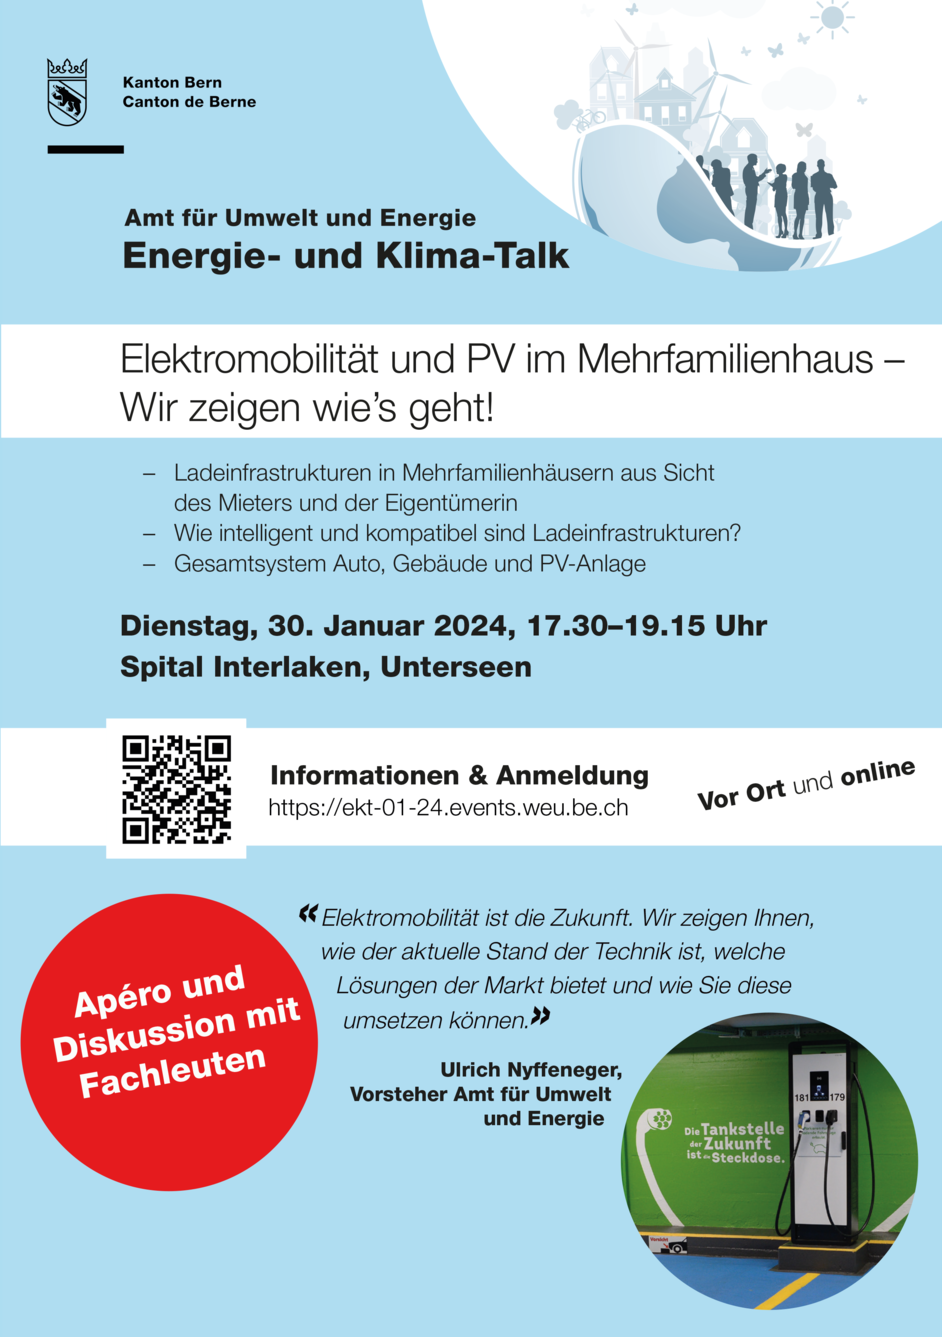 energie-_und_klima-talk_in_unterseen.png